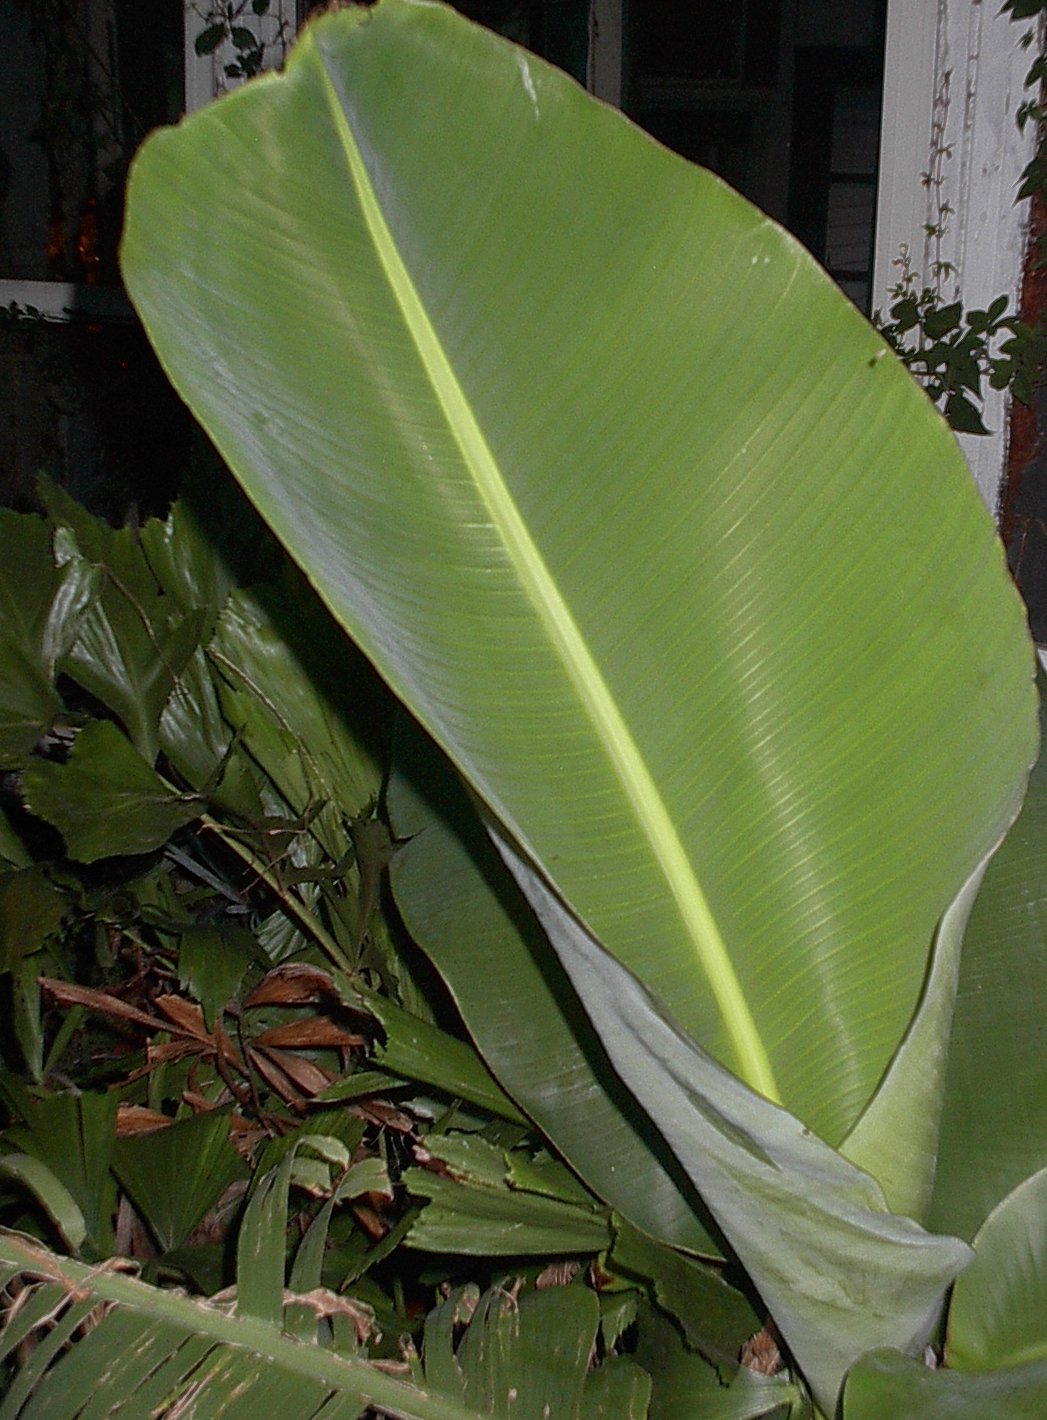 https://upload.wikimedia.org/wikipedia/commons/7/74/Banana-leaf-1.JPG